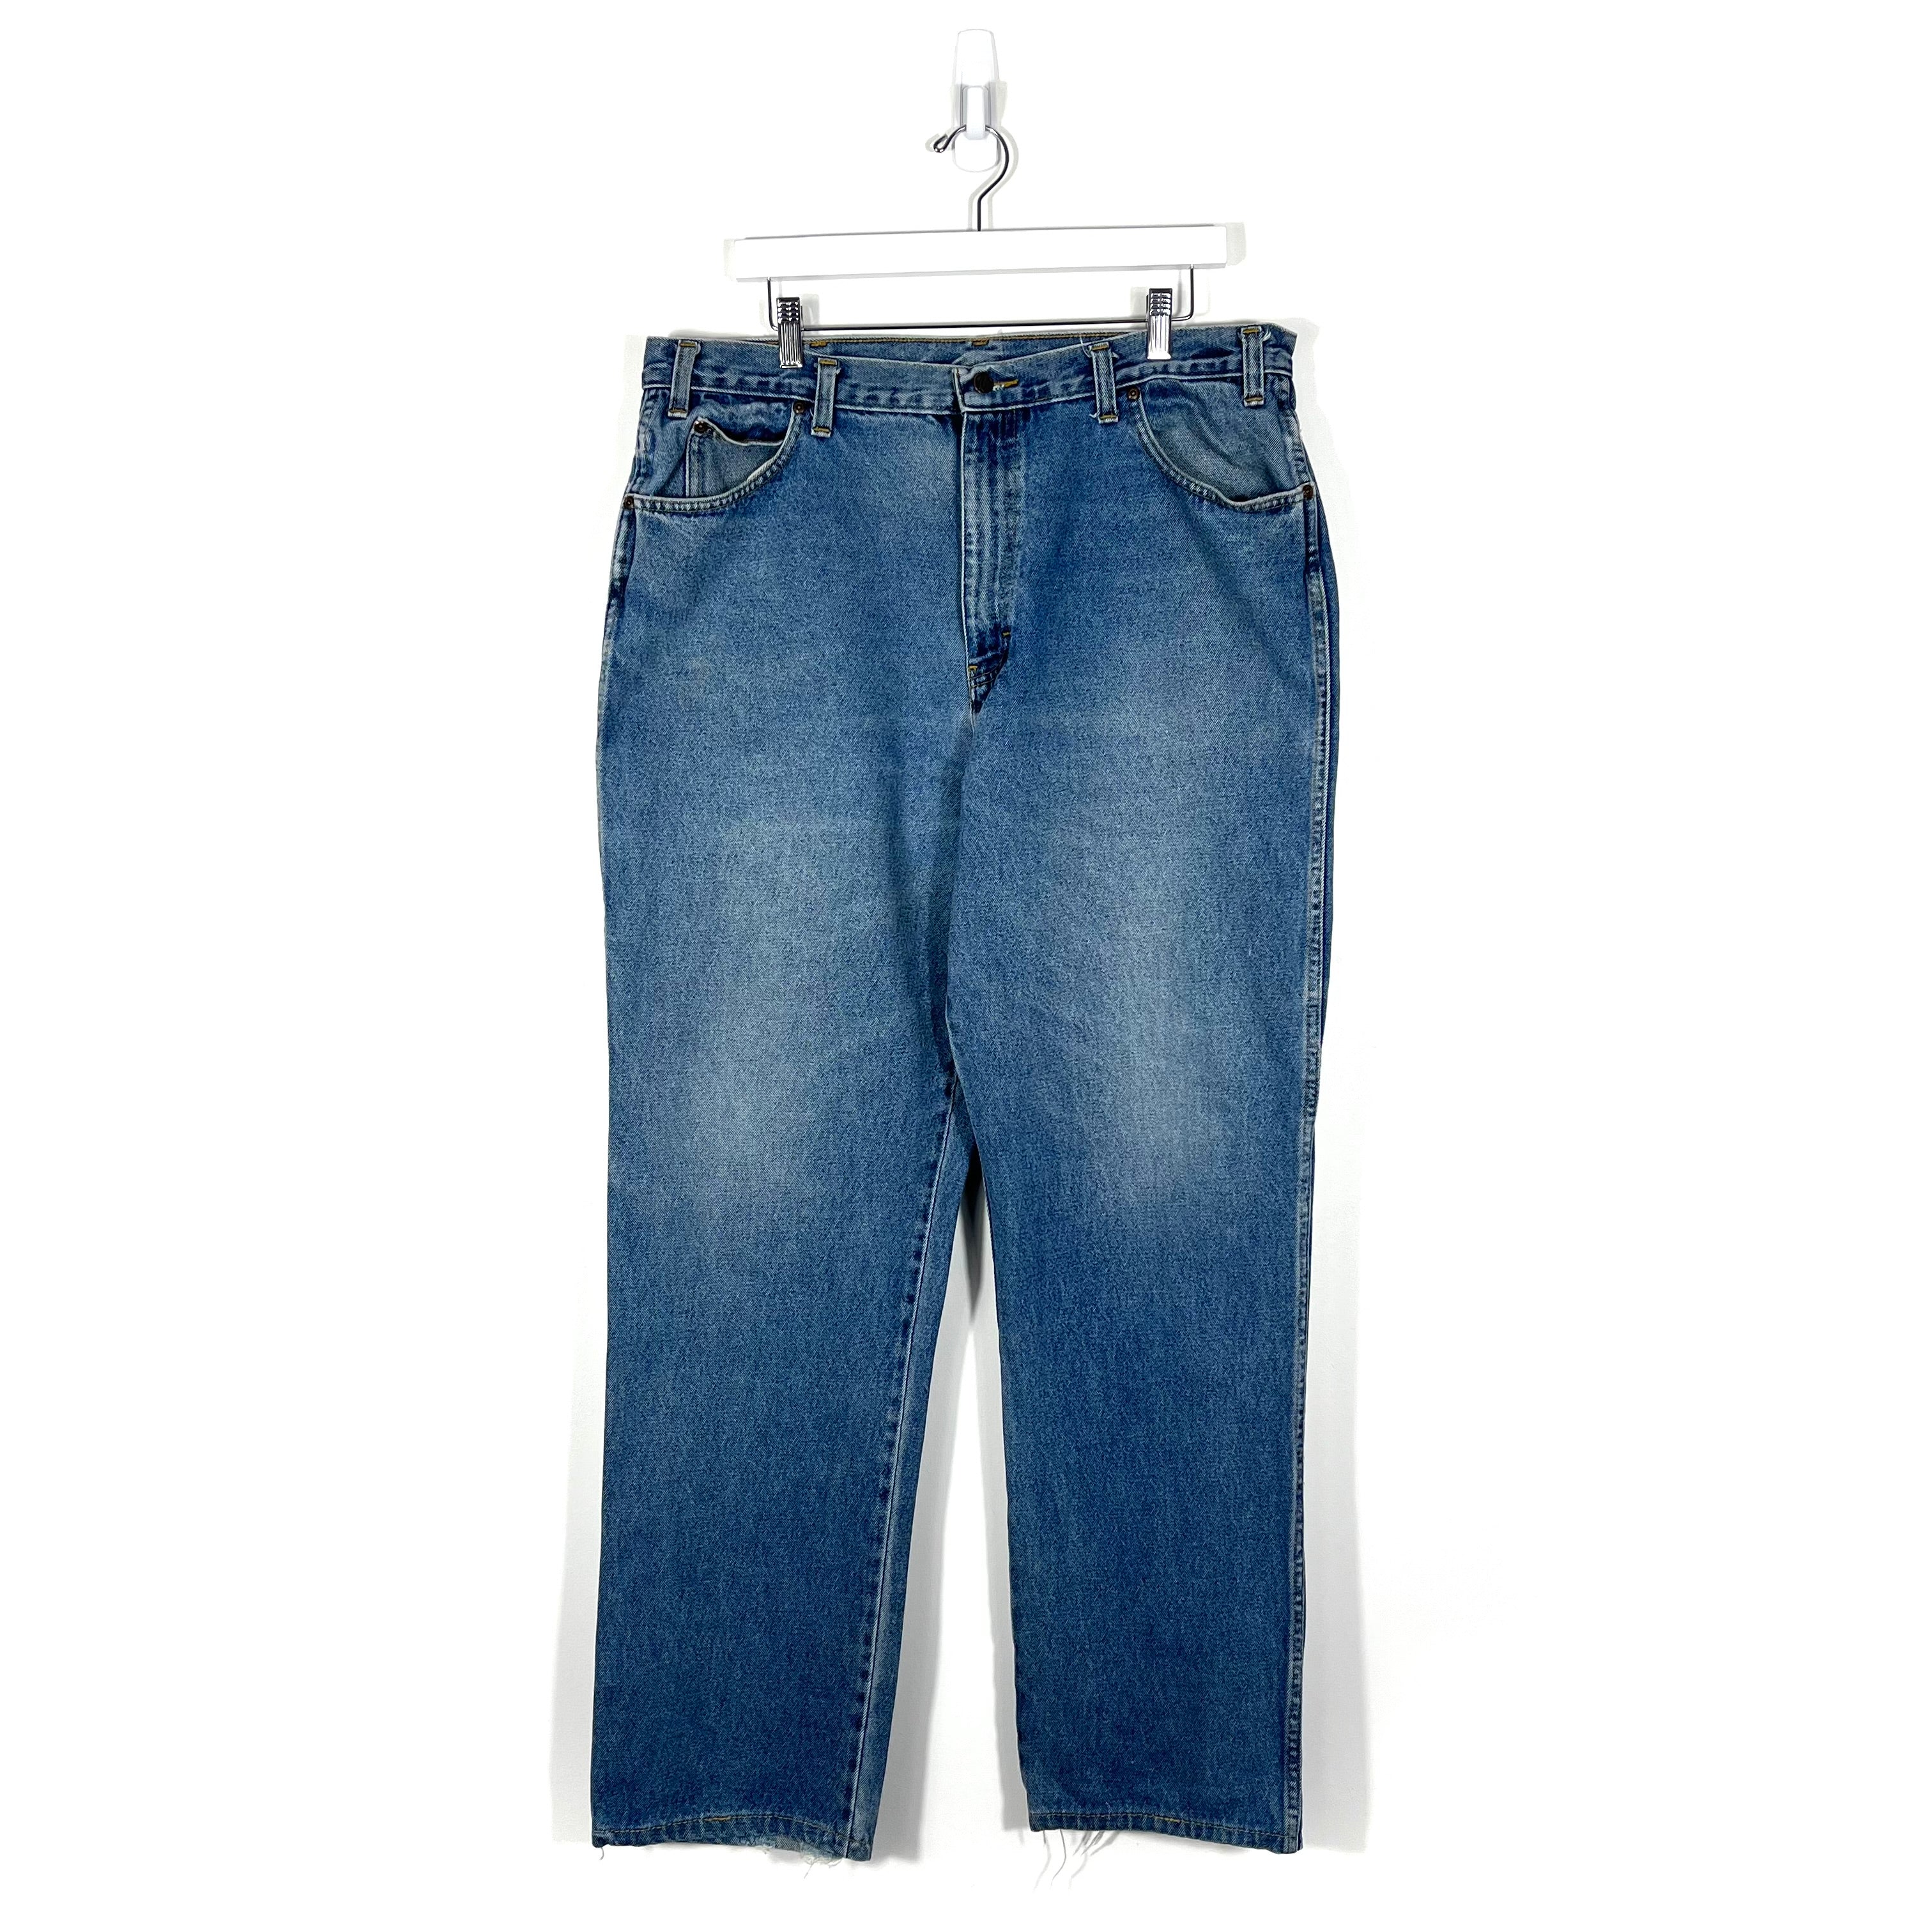 Vintage Dickies Jeans - Men's 38/34